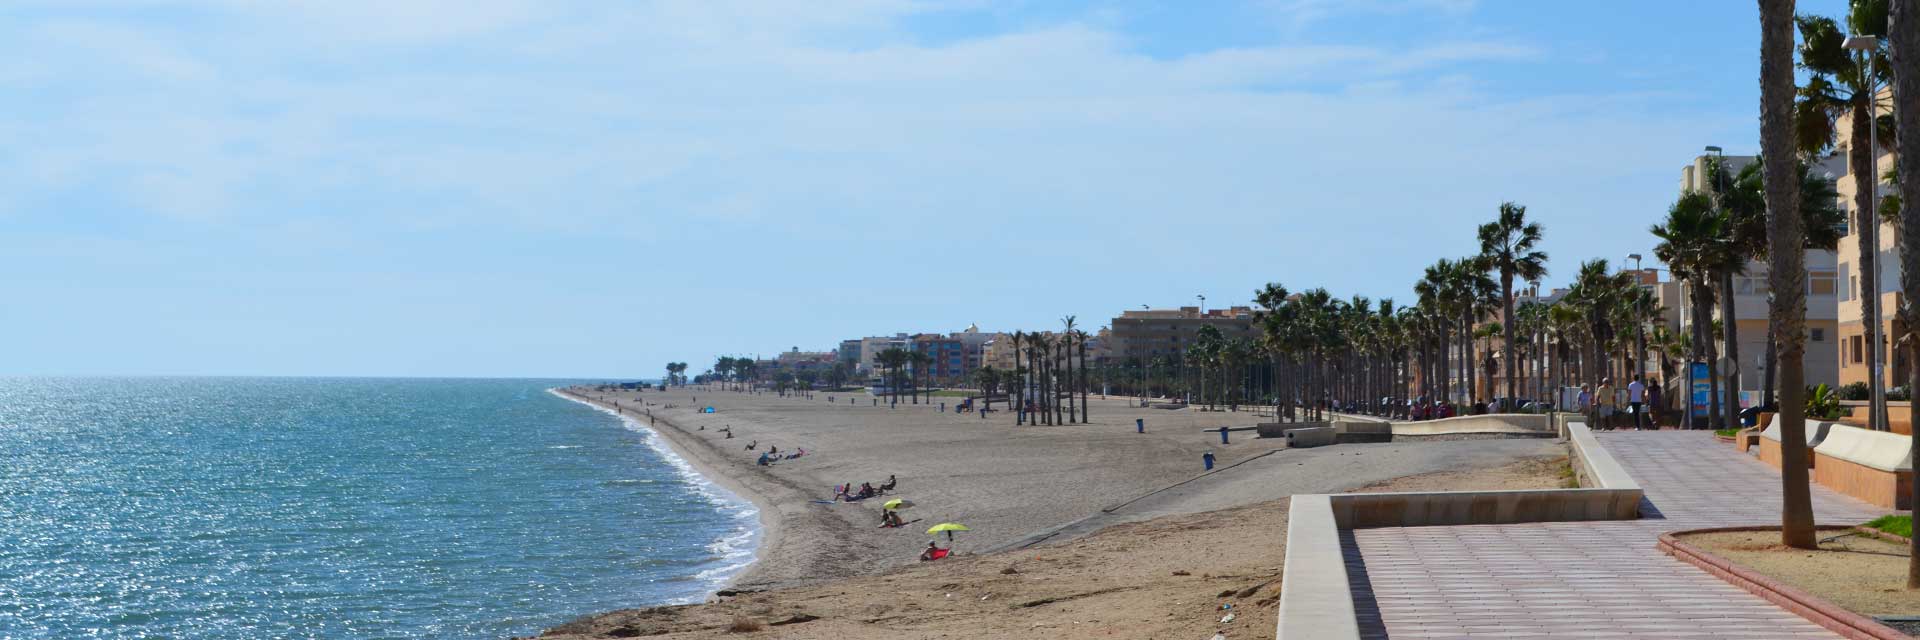 Playas de Roquetas de Mar ▶ Costa de Almería